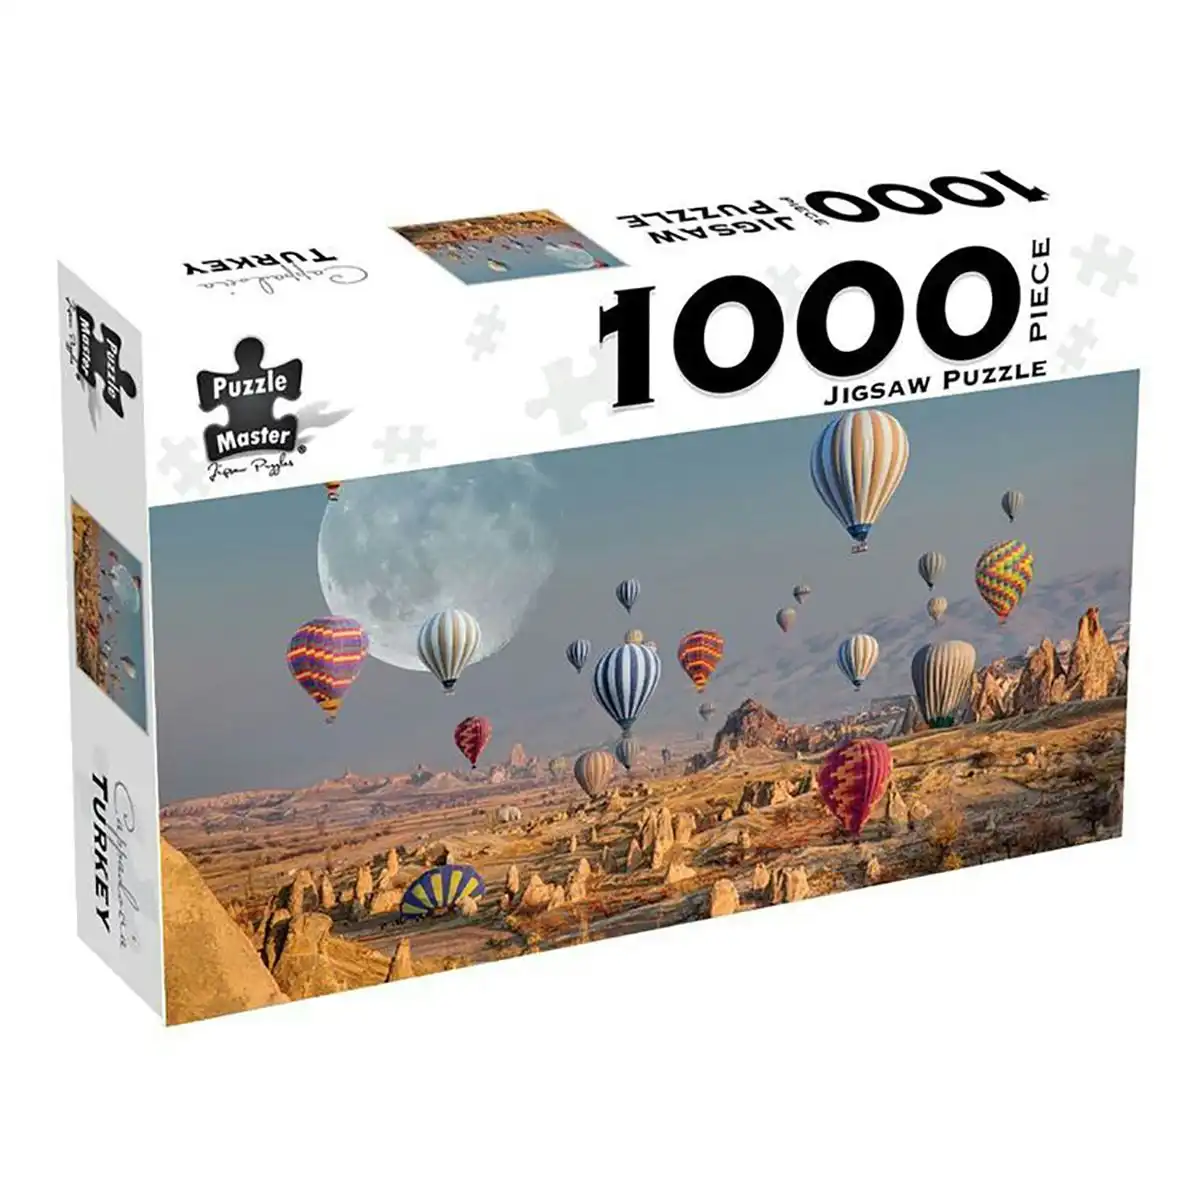 Puzzle Master 1000-Piece Jigsaw Puzzle, Cappadocia Turkey